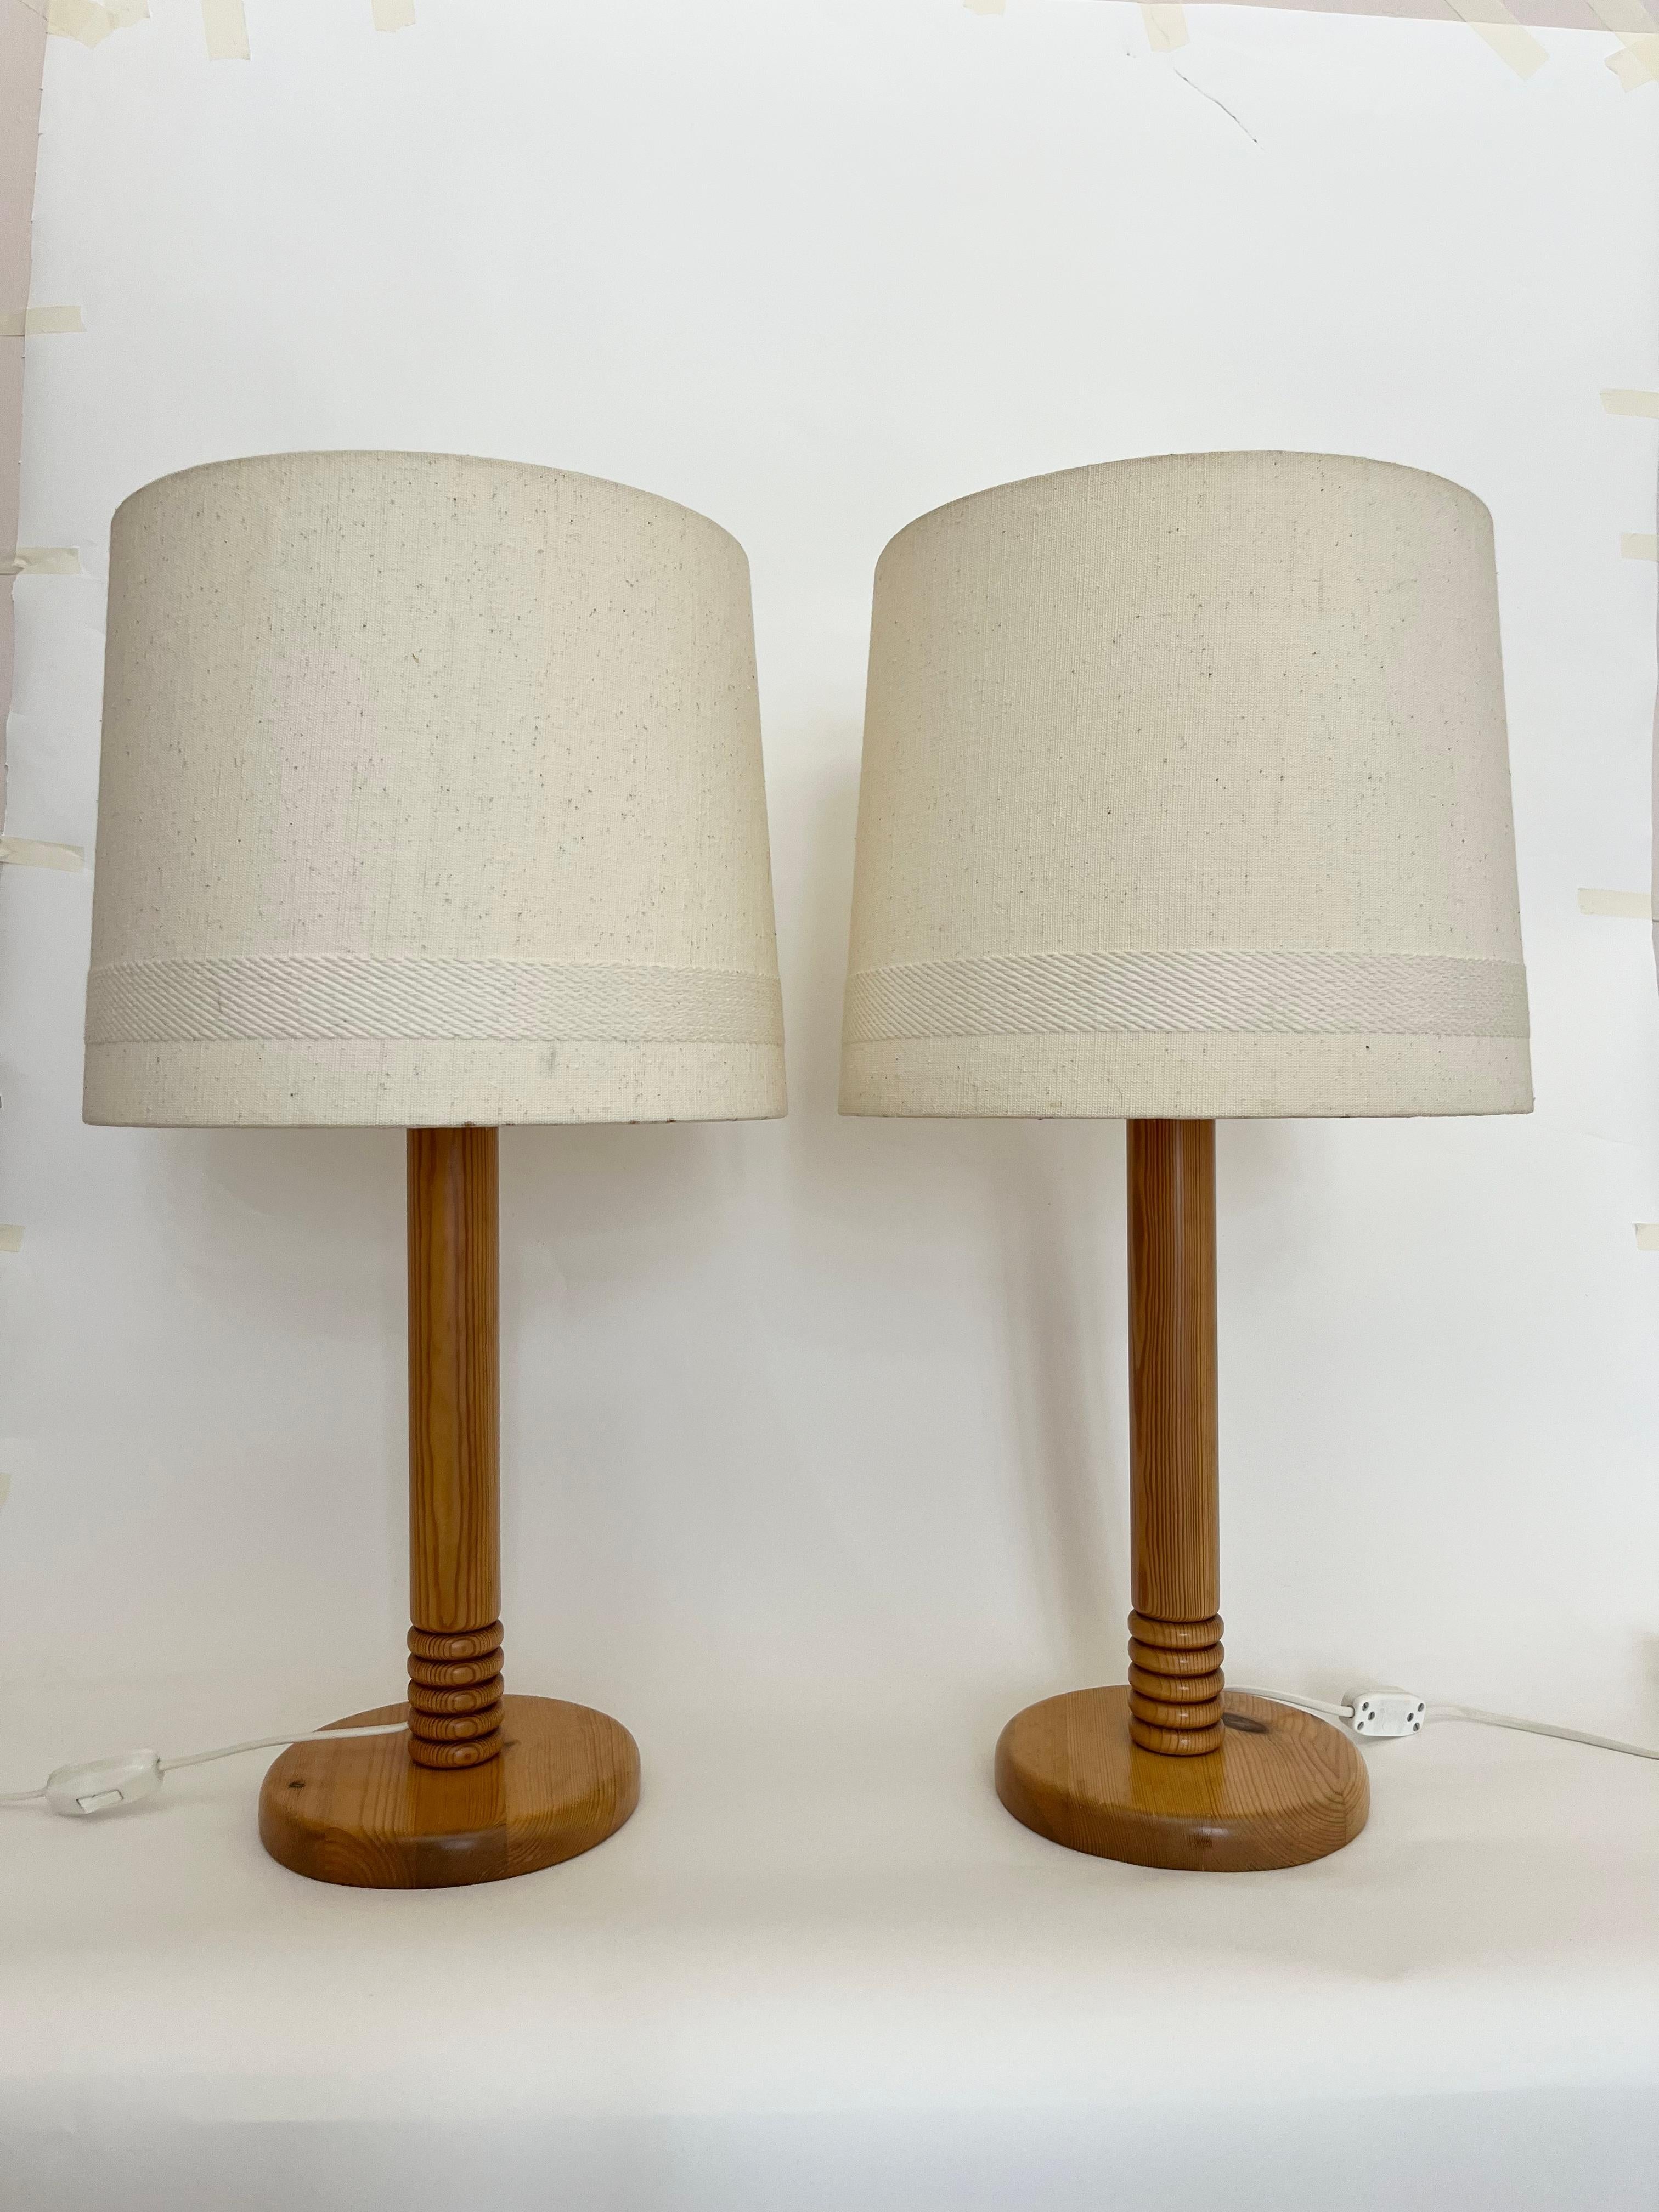 Dieses Paar dänischer Holztischlampen aus den 1970er Jahren ist groß und unaufdringlich beeindruckend. Mit den Originalschirmen in hellem Elfenbeinton mit gewebten Verzierungen/Details. 

Höhe: 66 cm (26.0 in) mit dem Schirm // Höhe: 43 cm (16.9 in)